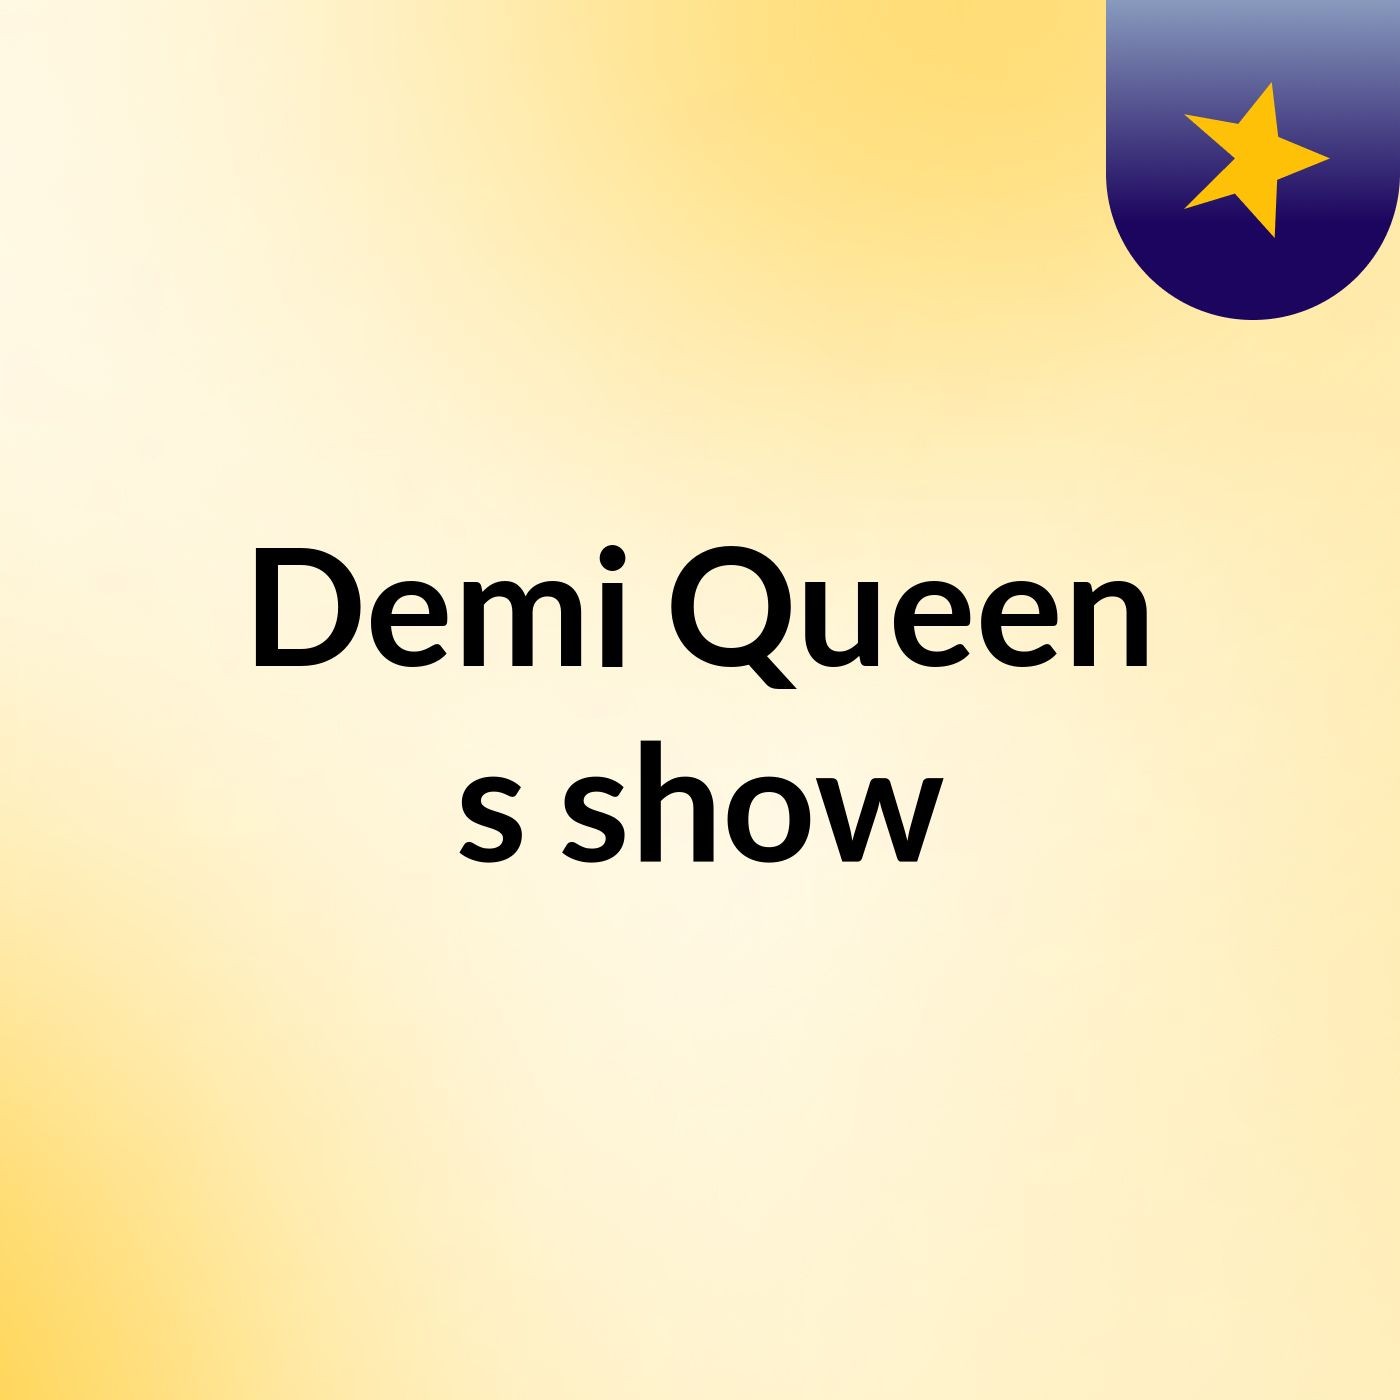 Demi Queen's show